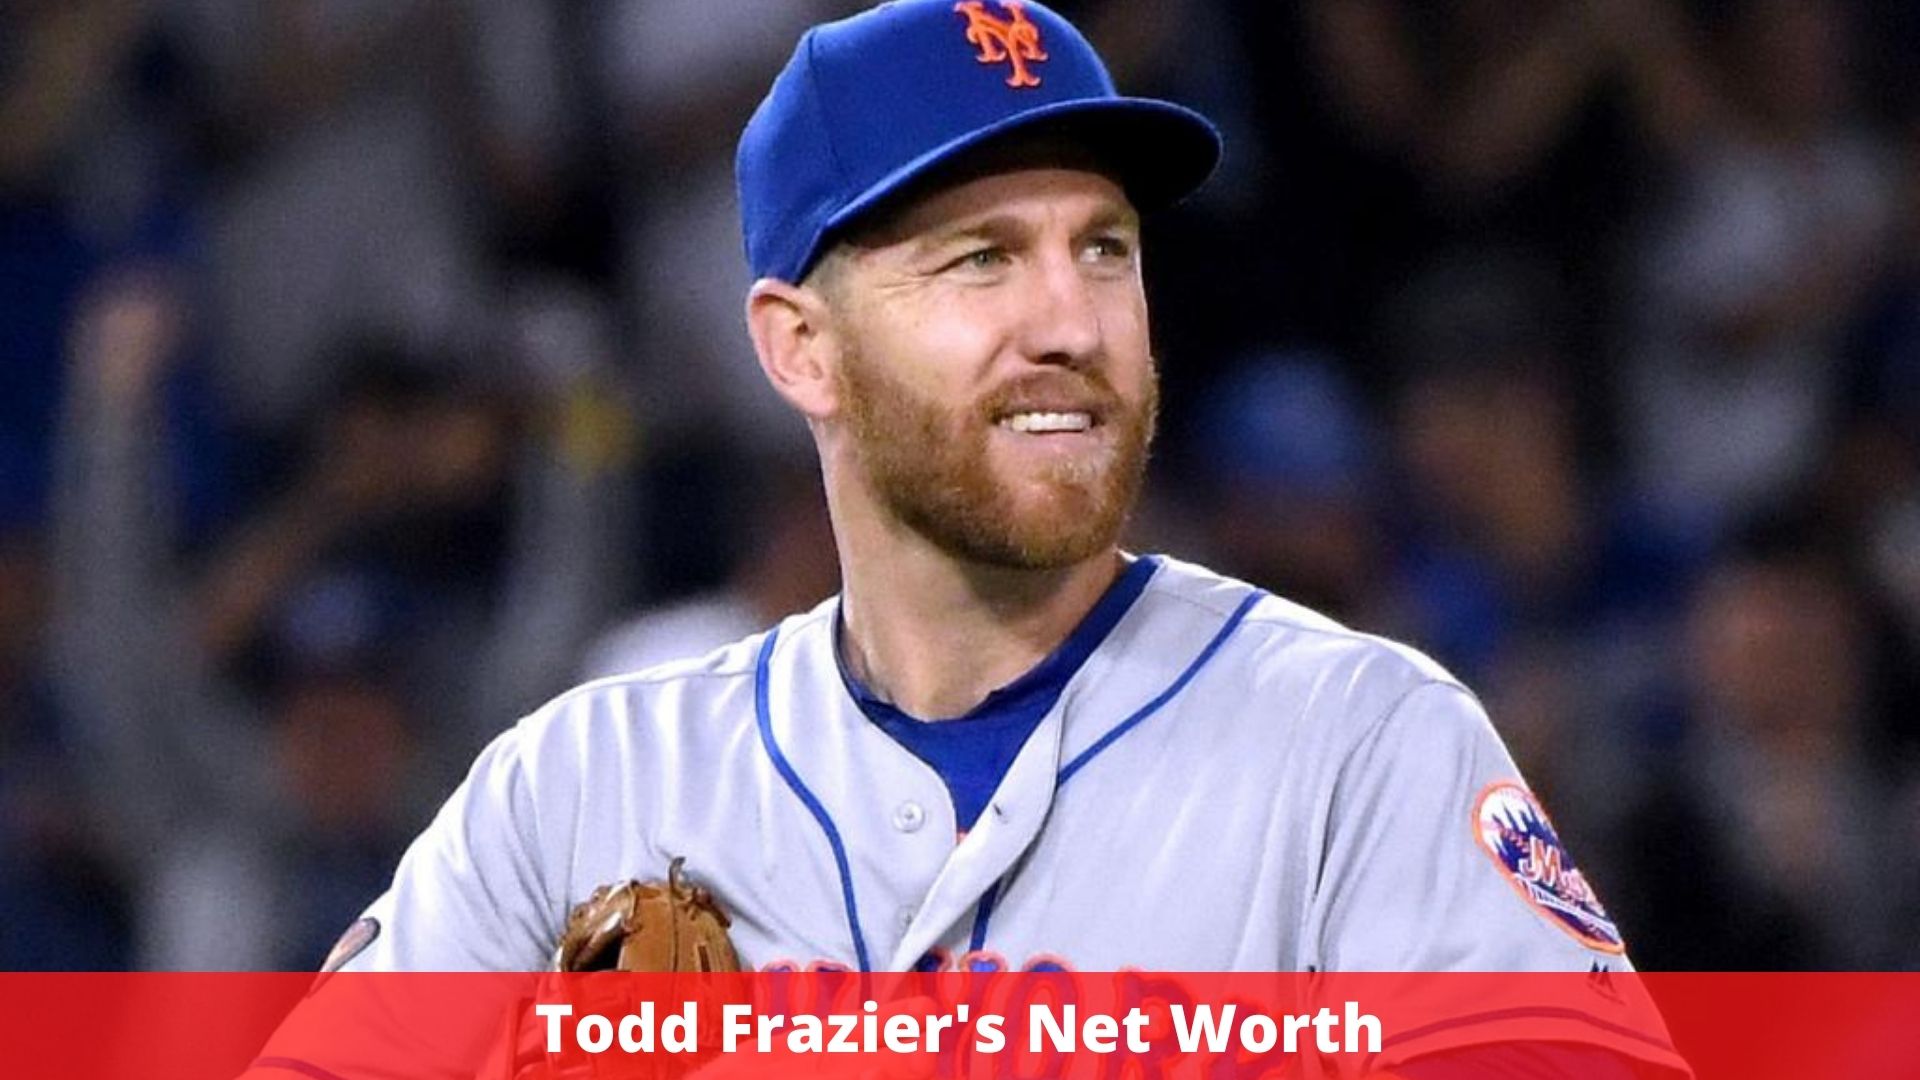 Todd Frazier's Net Worth